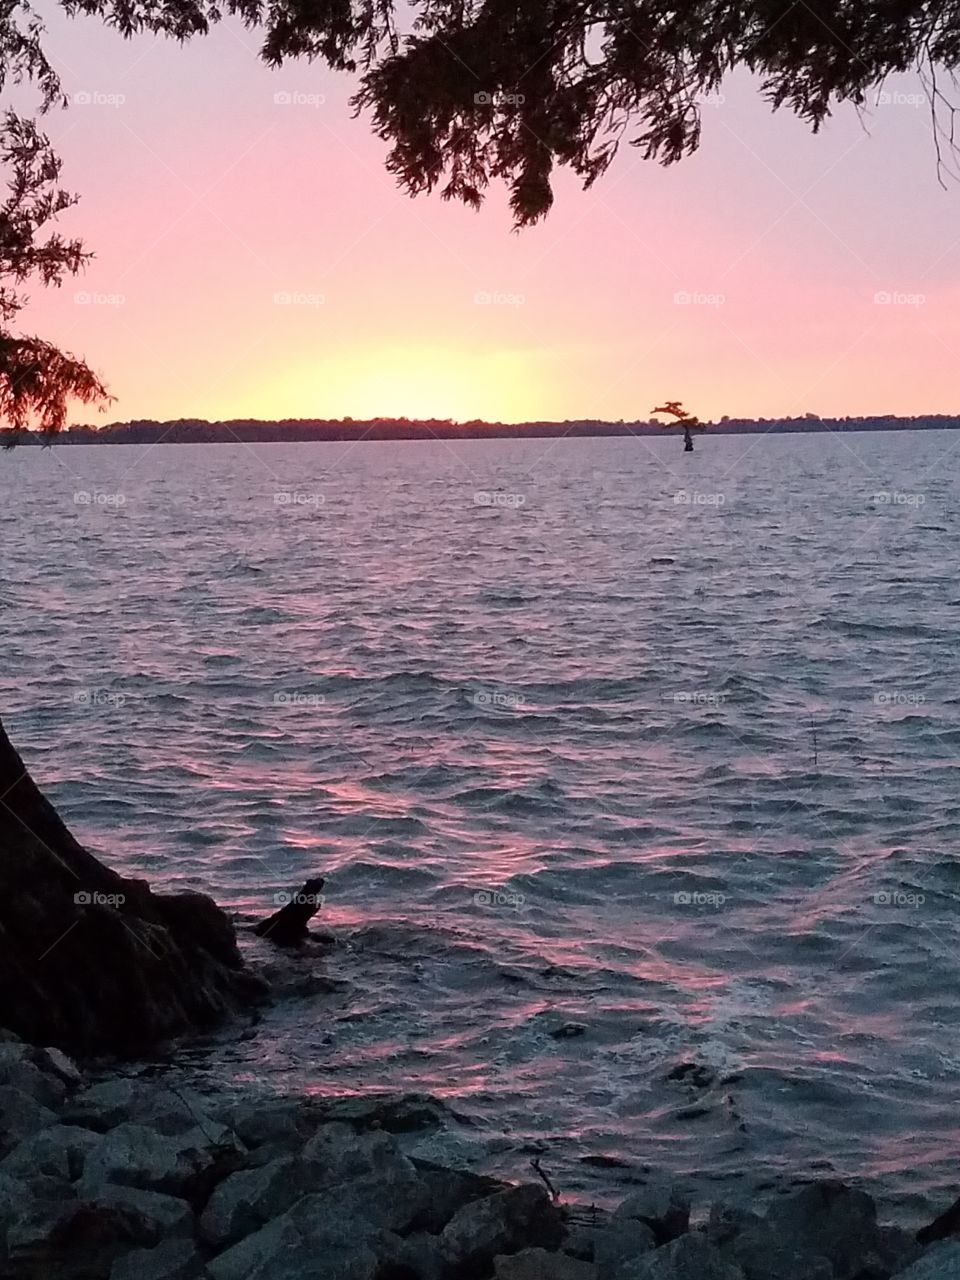 sunset on Reelfoot lake